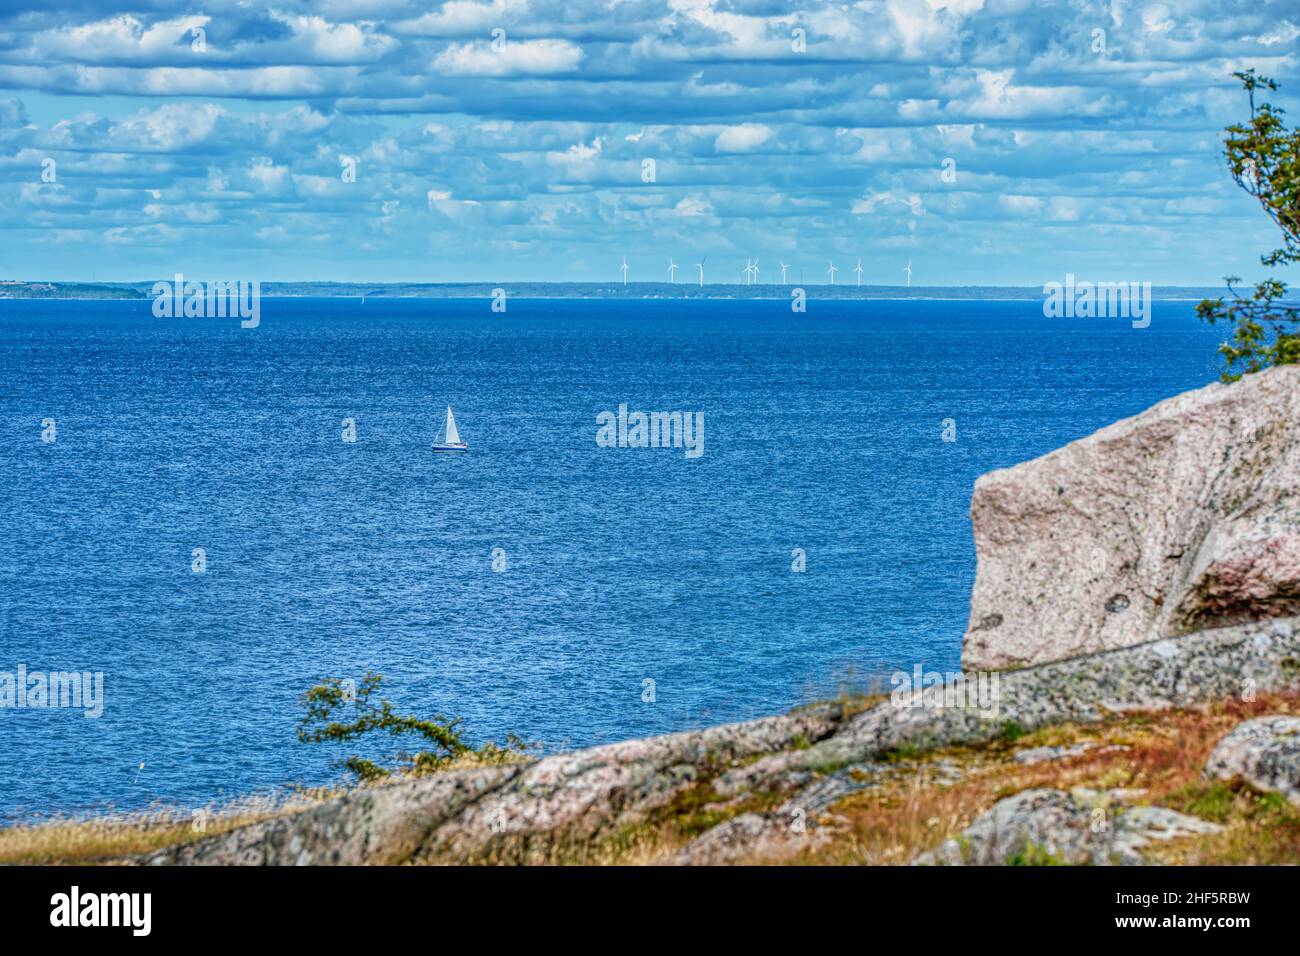 Weit weg, kleines Segelboot oder Segelboot allein auf See durch die Isle of Hano, Schweden vermittelt Frieden oder Ruhe auf einem einsame Sommerurlaub Stockfoto